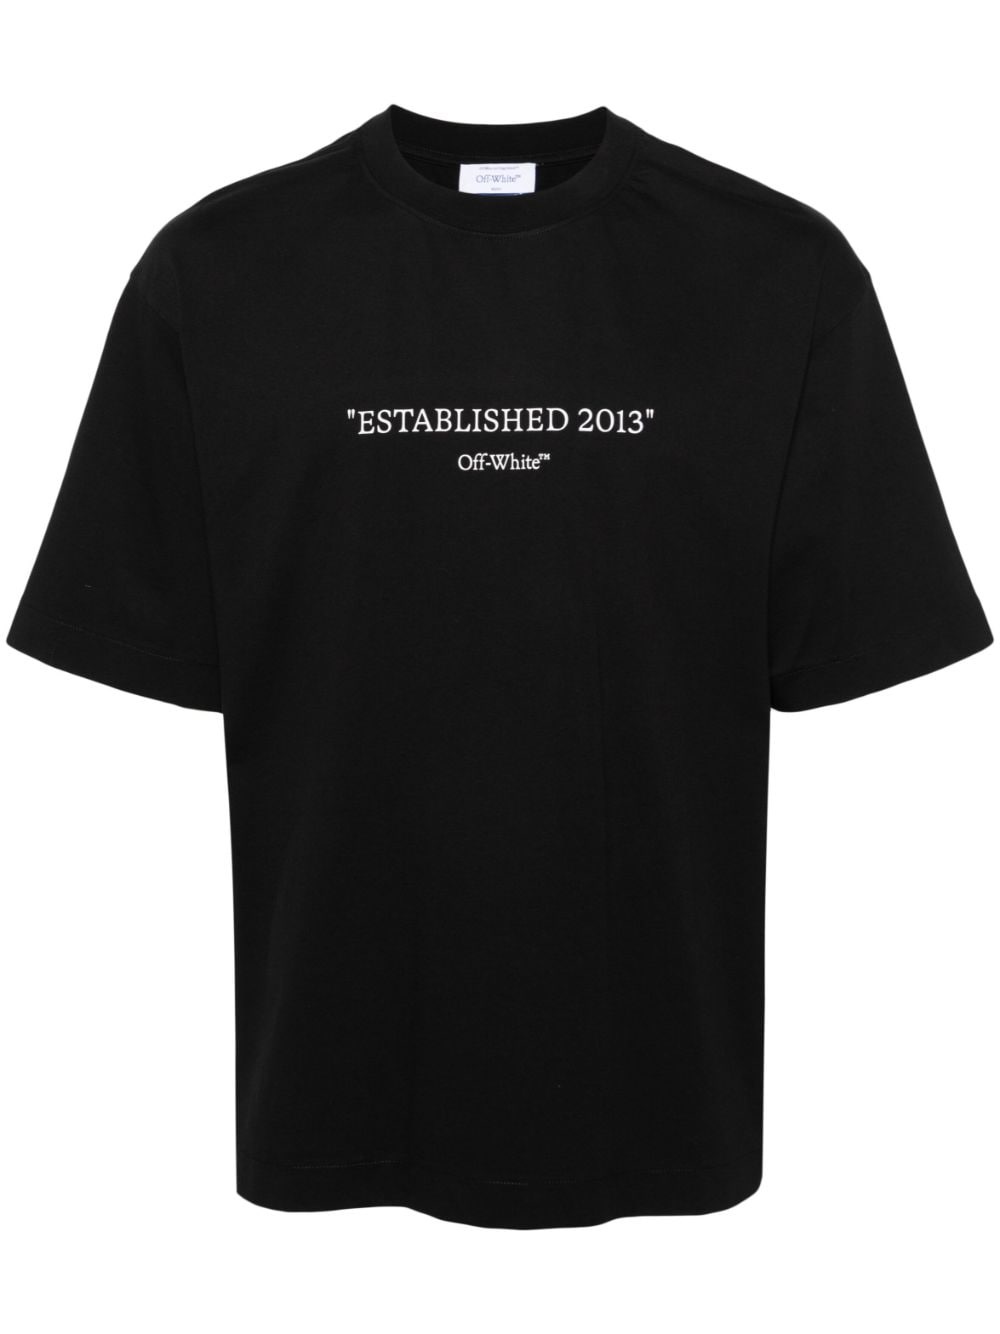 Established 2013 cotton T-shirt - 1